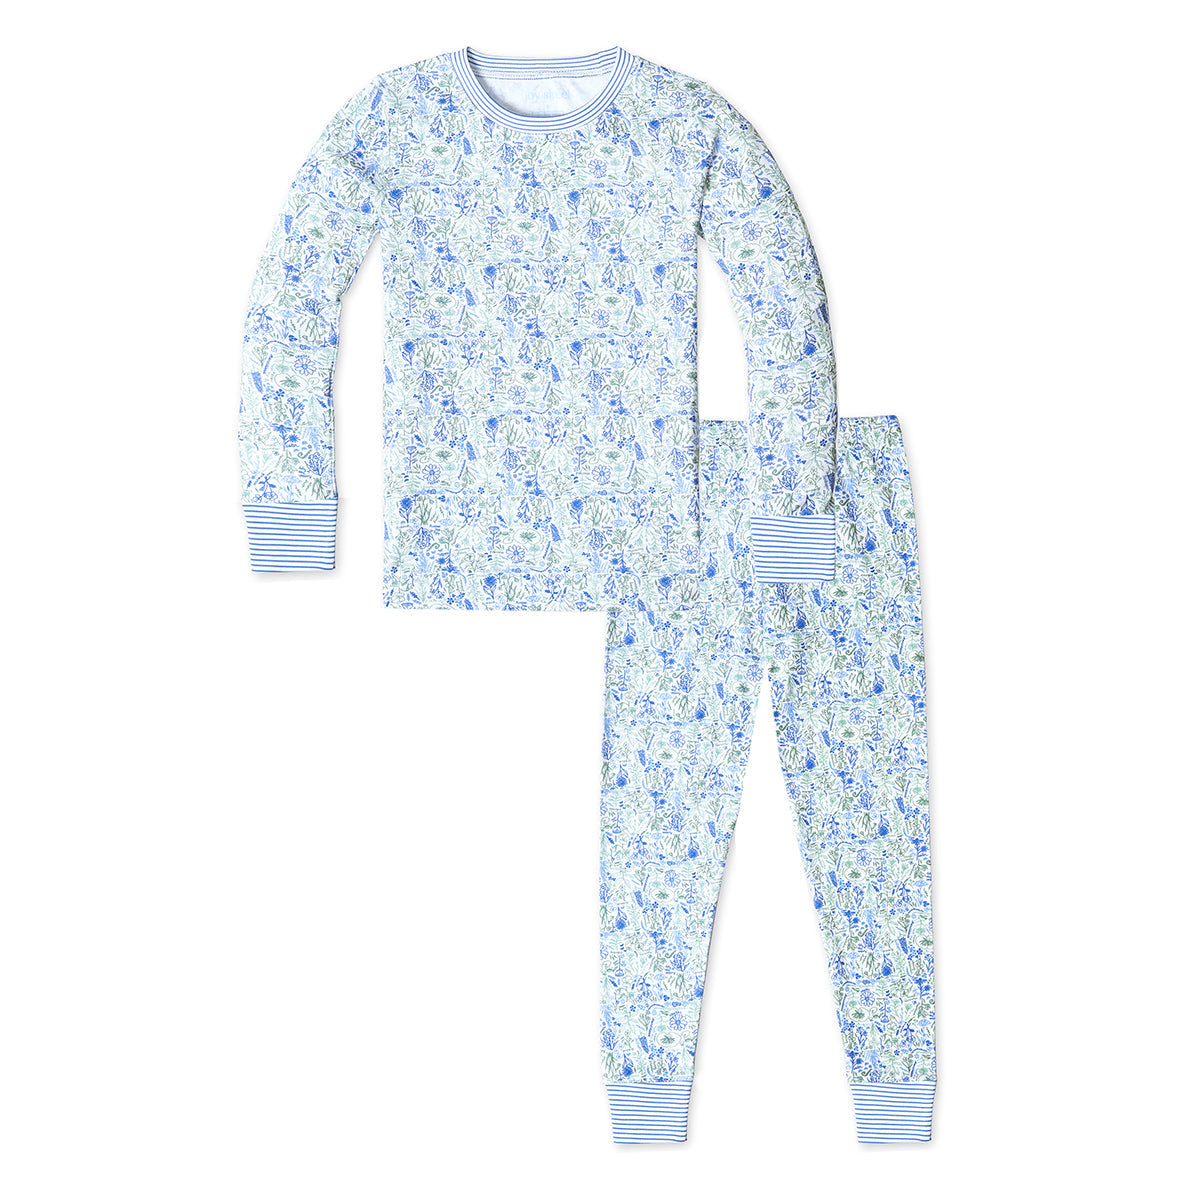 Birth Flowers Two Piece Kids Pajamas. - Birth Flowers - Aster Multi